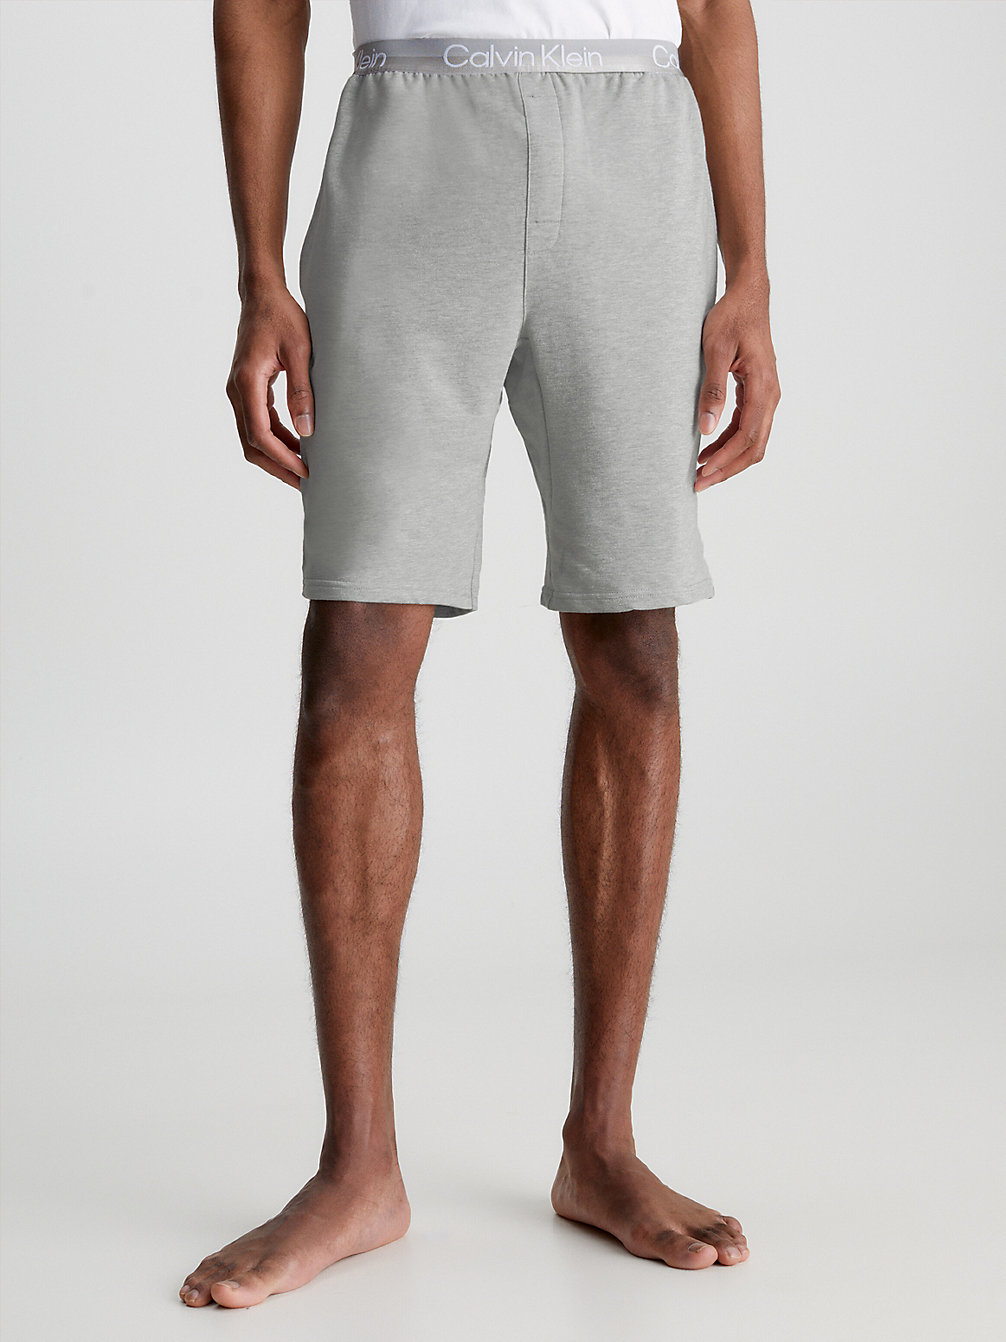 GREY HEATHER Lounge Shorts - Modern Structure undefined men Calvin Klein